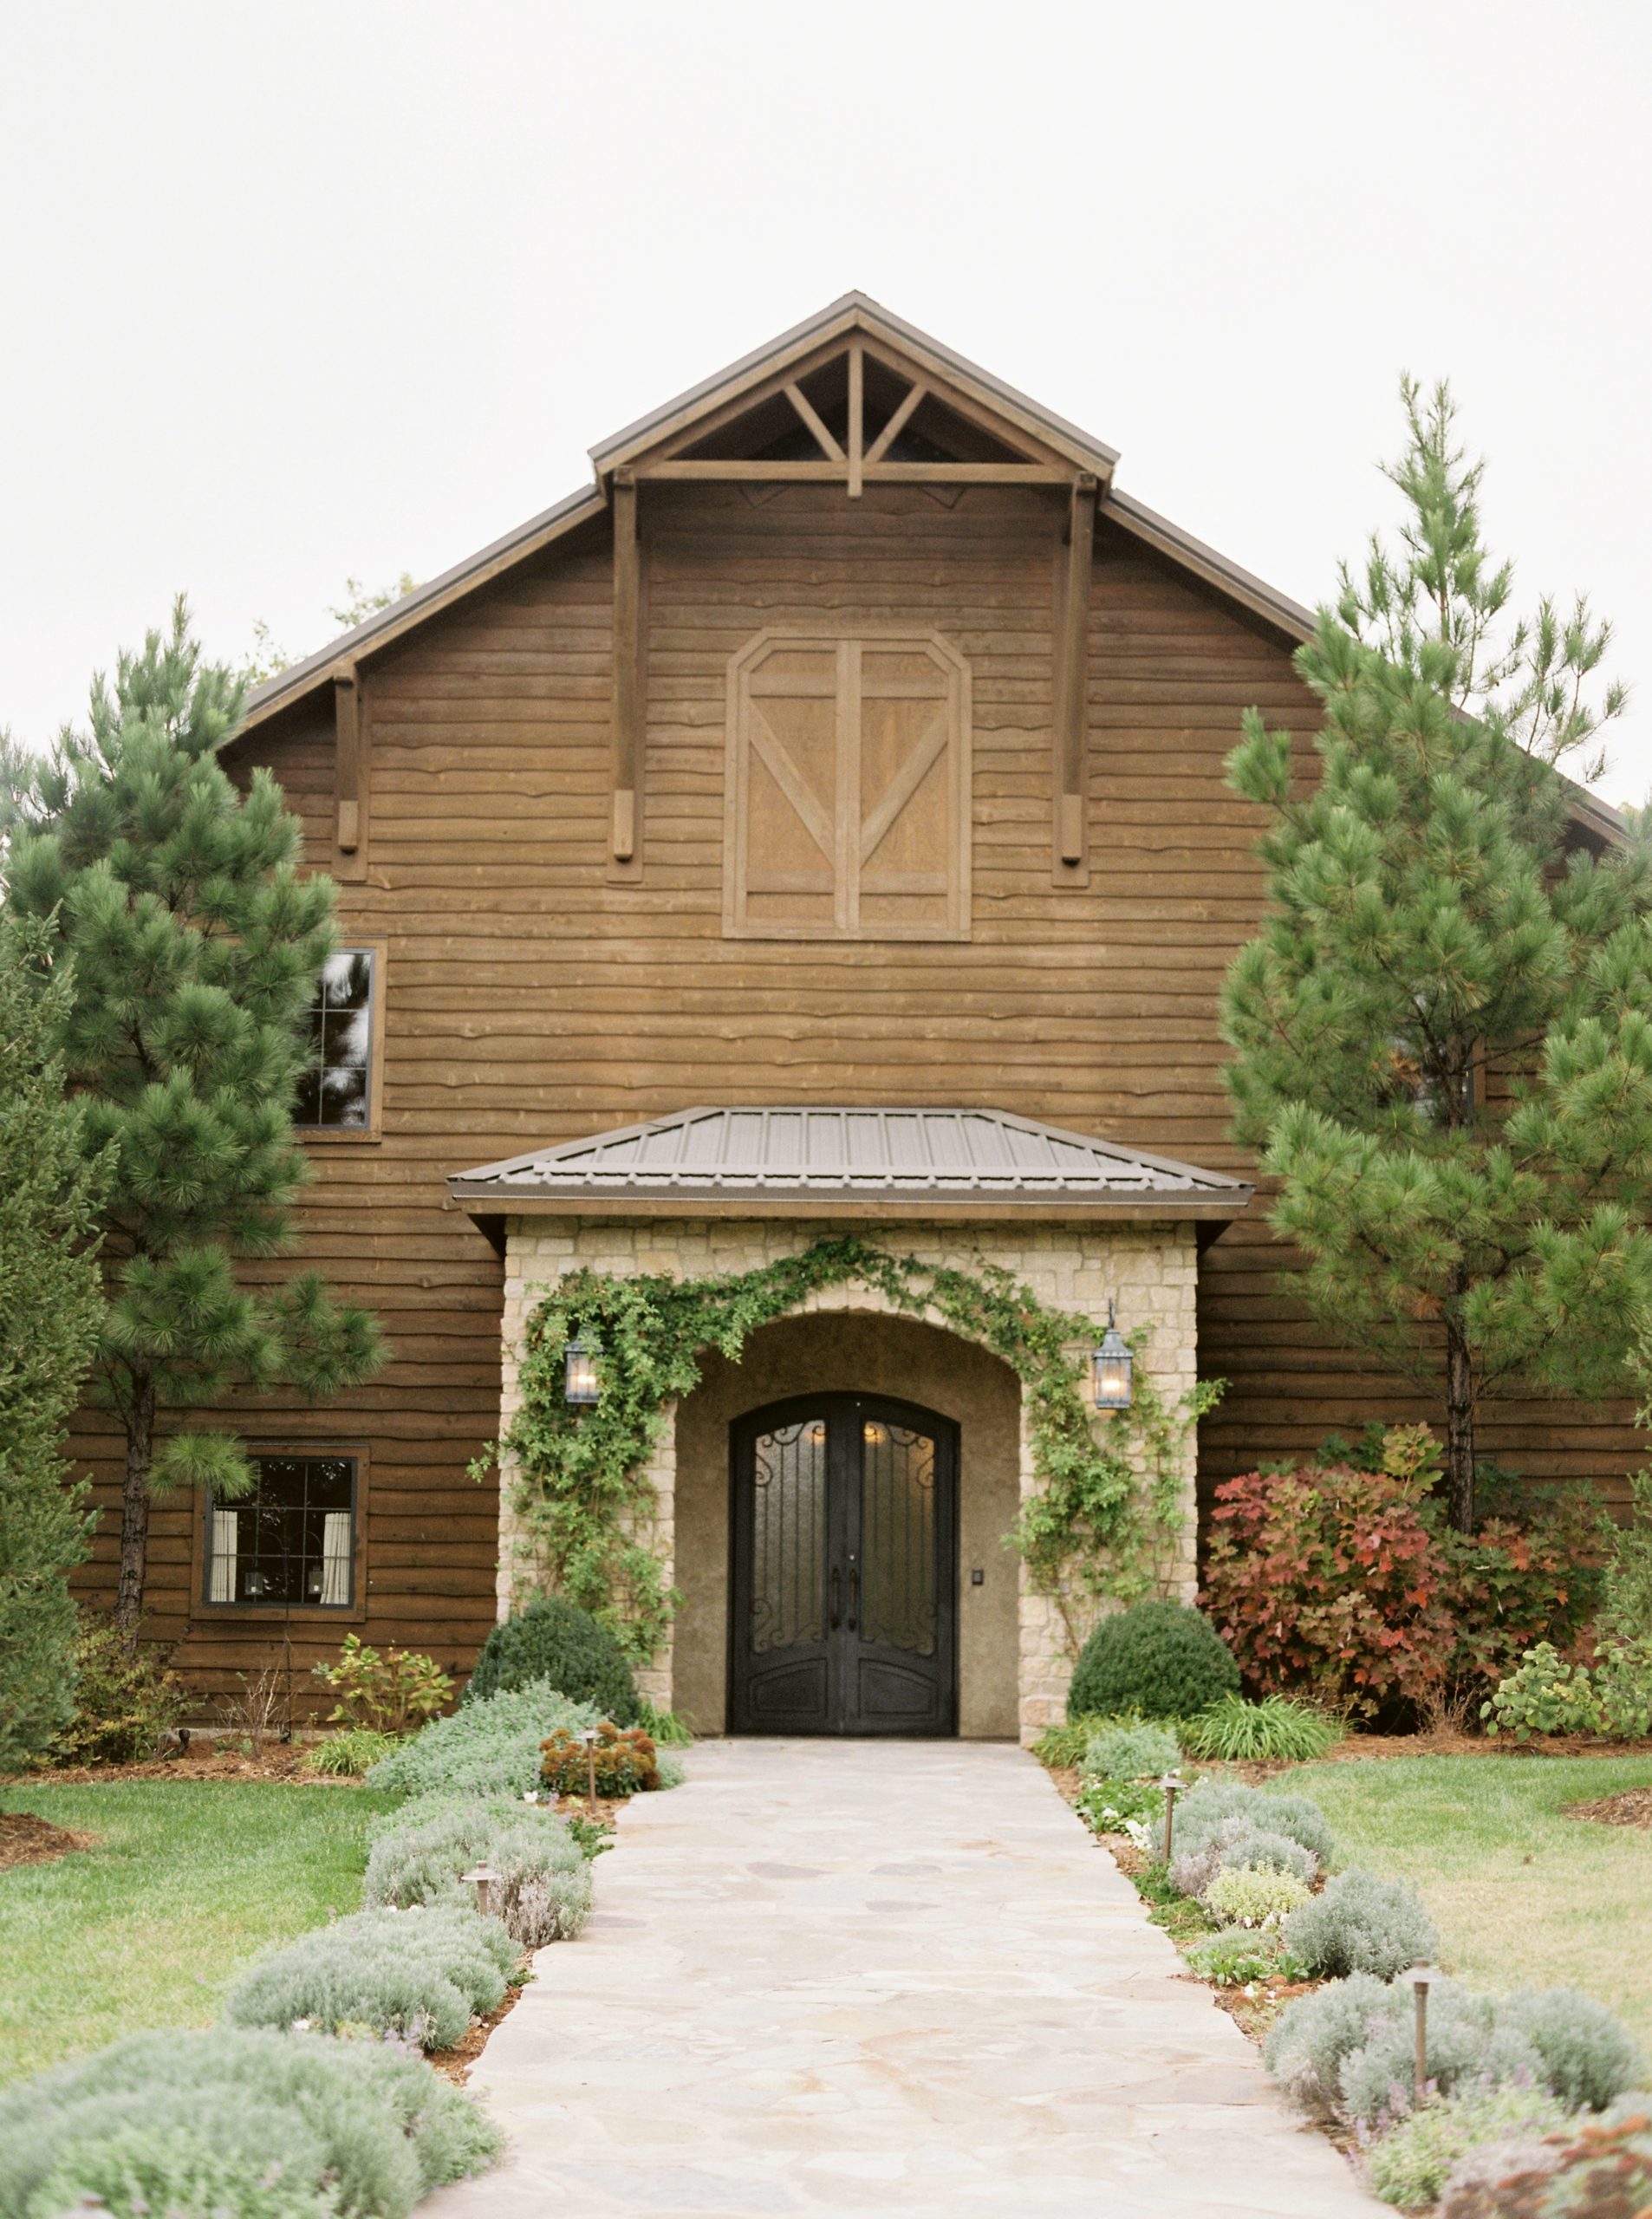 Integrity Hills Chapel wedding venue at Big Cedar Lodge